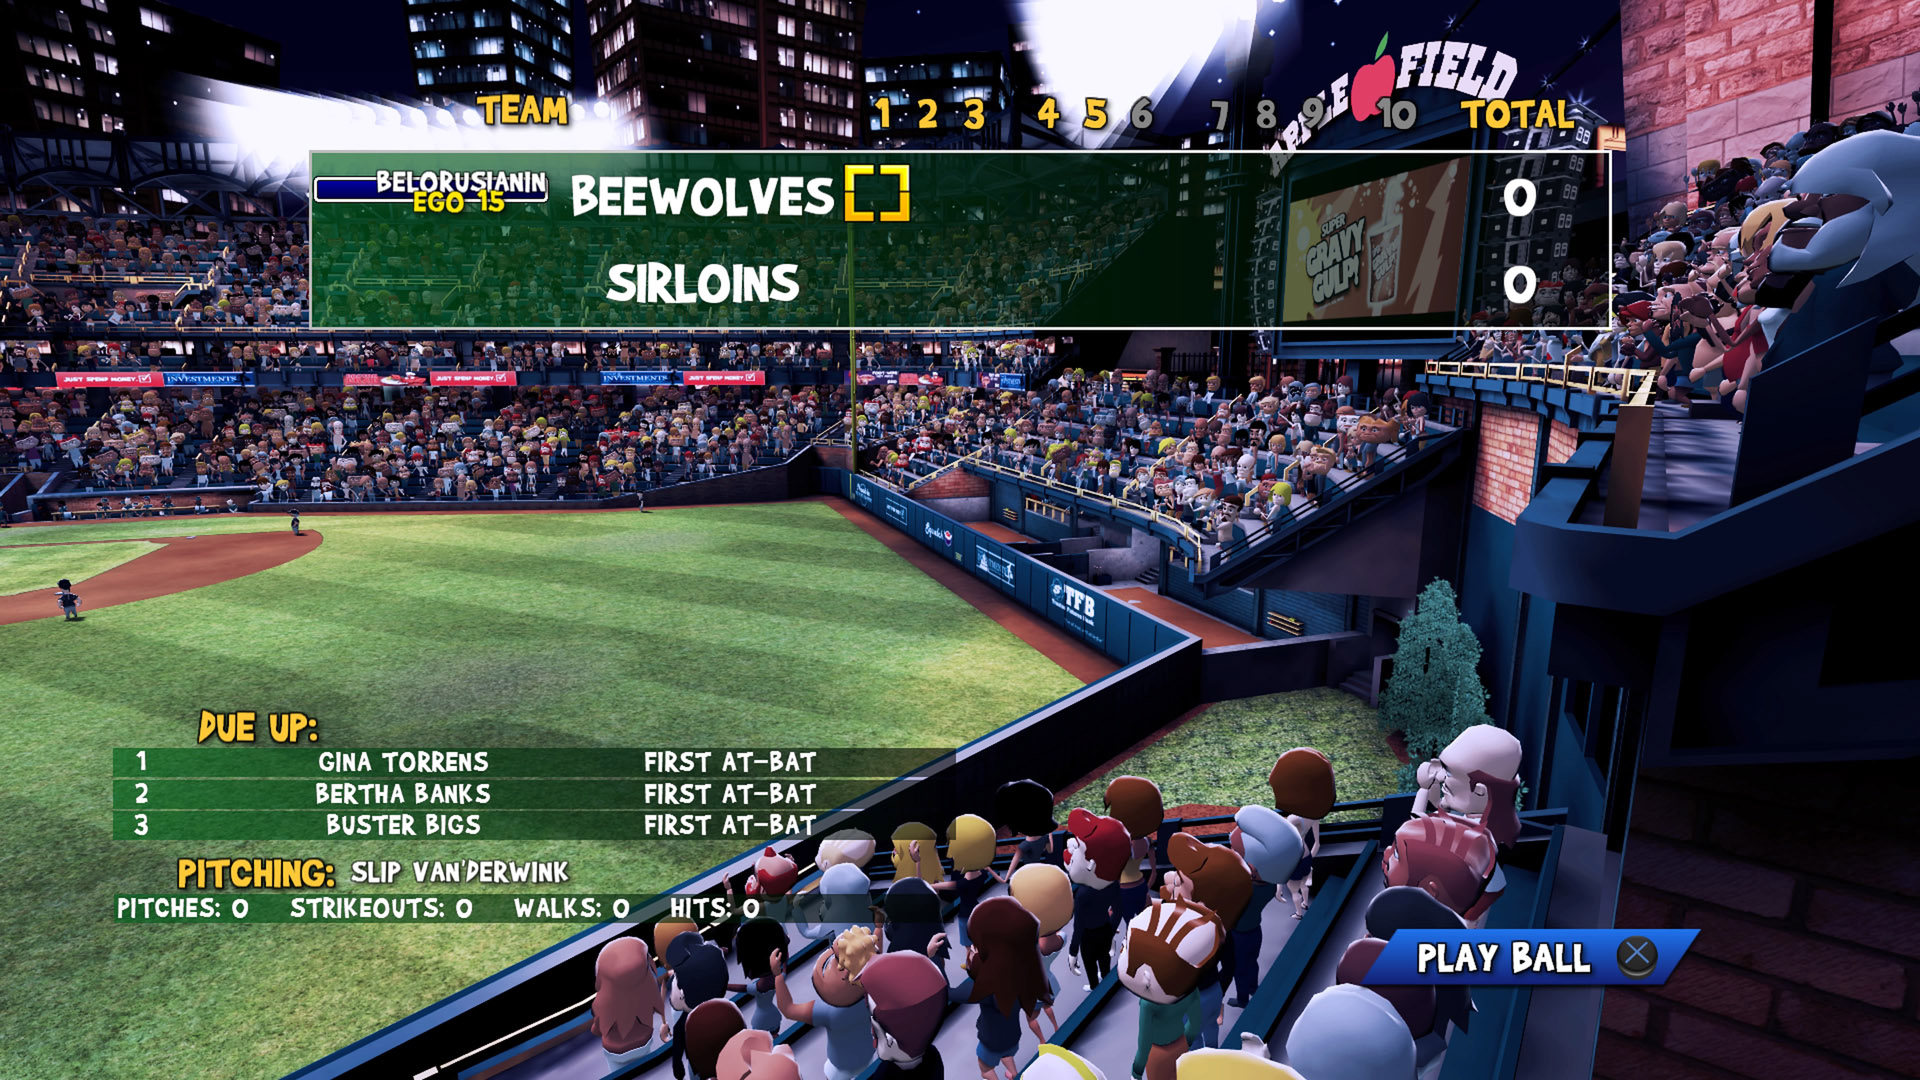 Скриншот *Super Mega Baseball [PS4] 5.05 / 6.72 / 7.02 [USA] (2014) [Английский] (v1.03)*